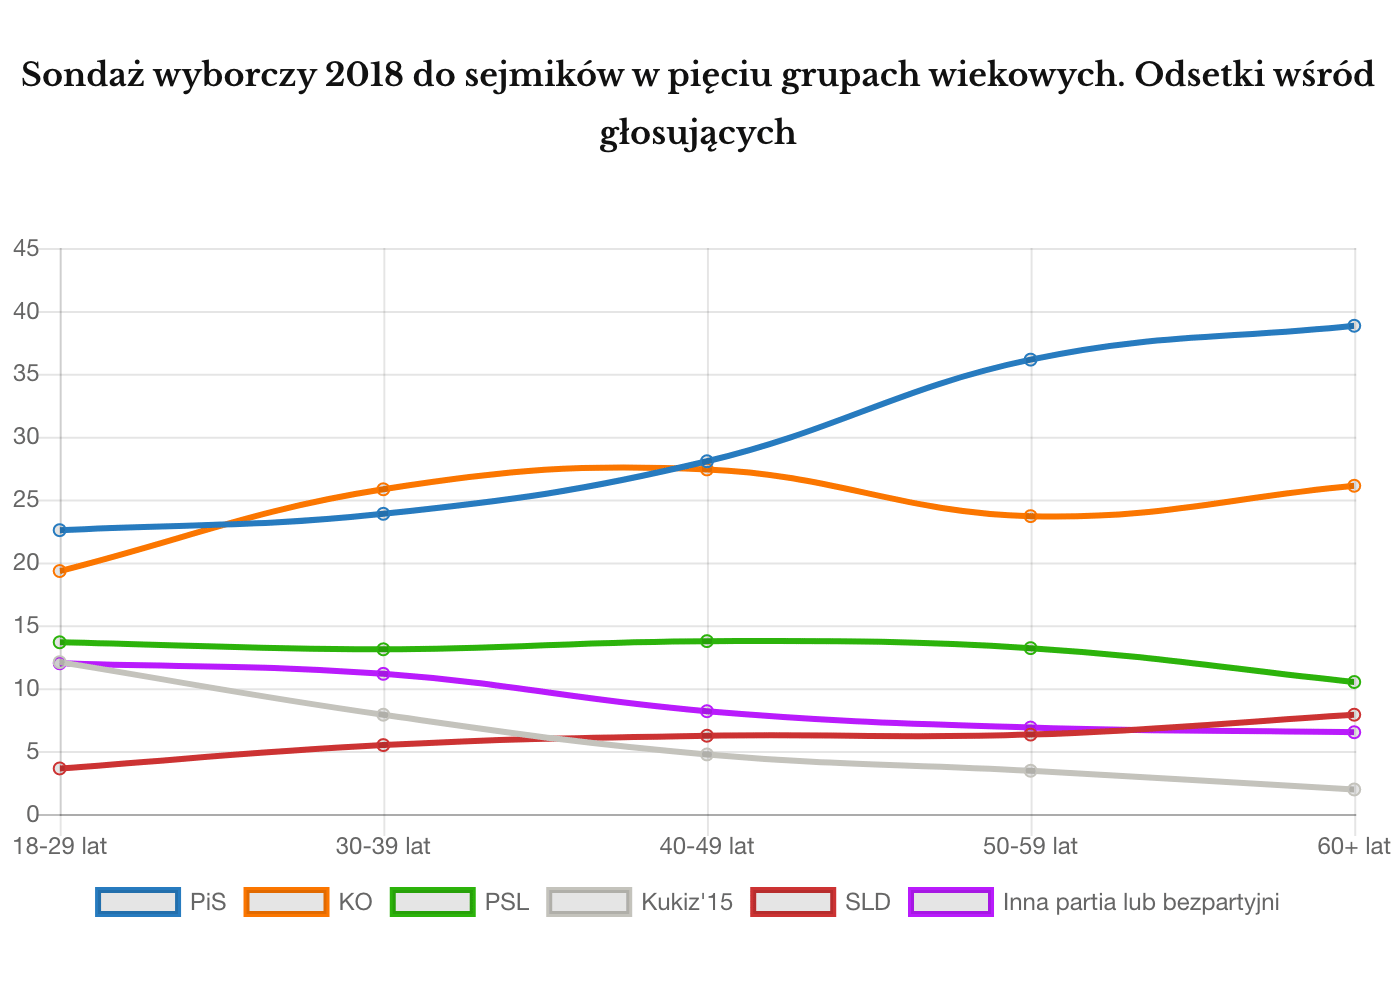 Wyniki wyborów samorządowych 2018 z podziałem na grupy wiekowe